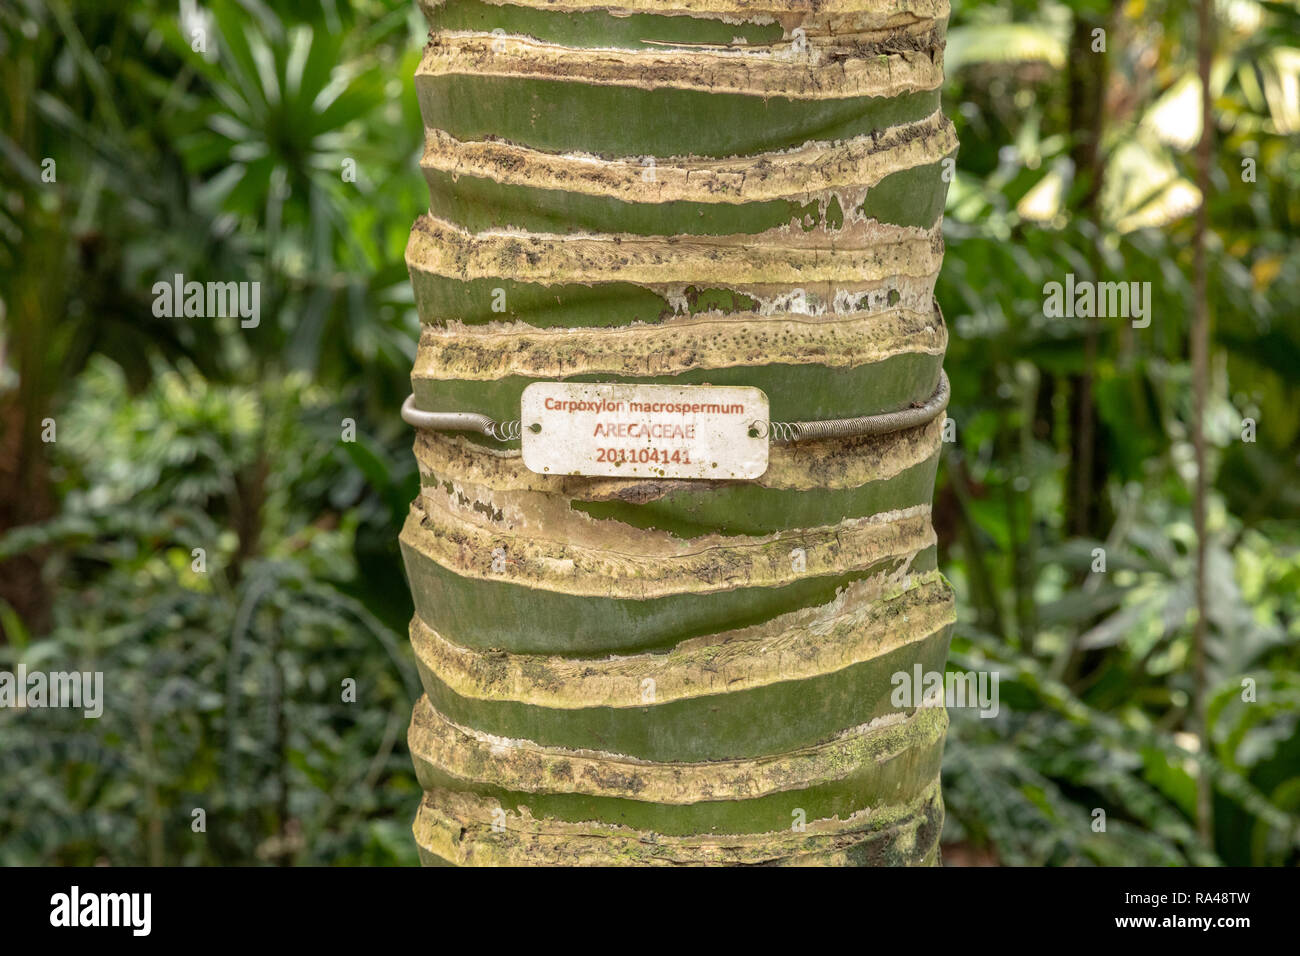 Carpoxykum Palm or Aneityum Palm, Carpoxylon macrospermum, tree trunk with name plate Stock Photo